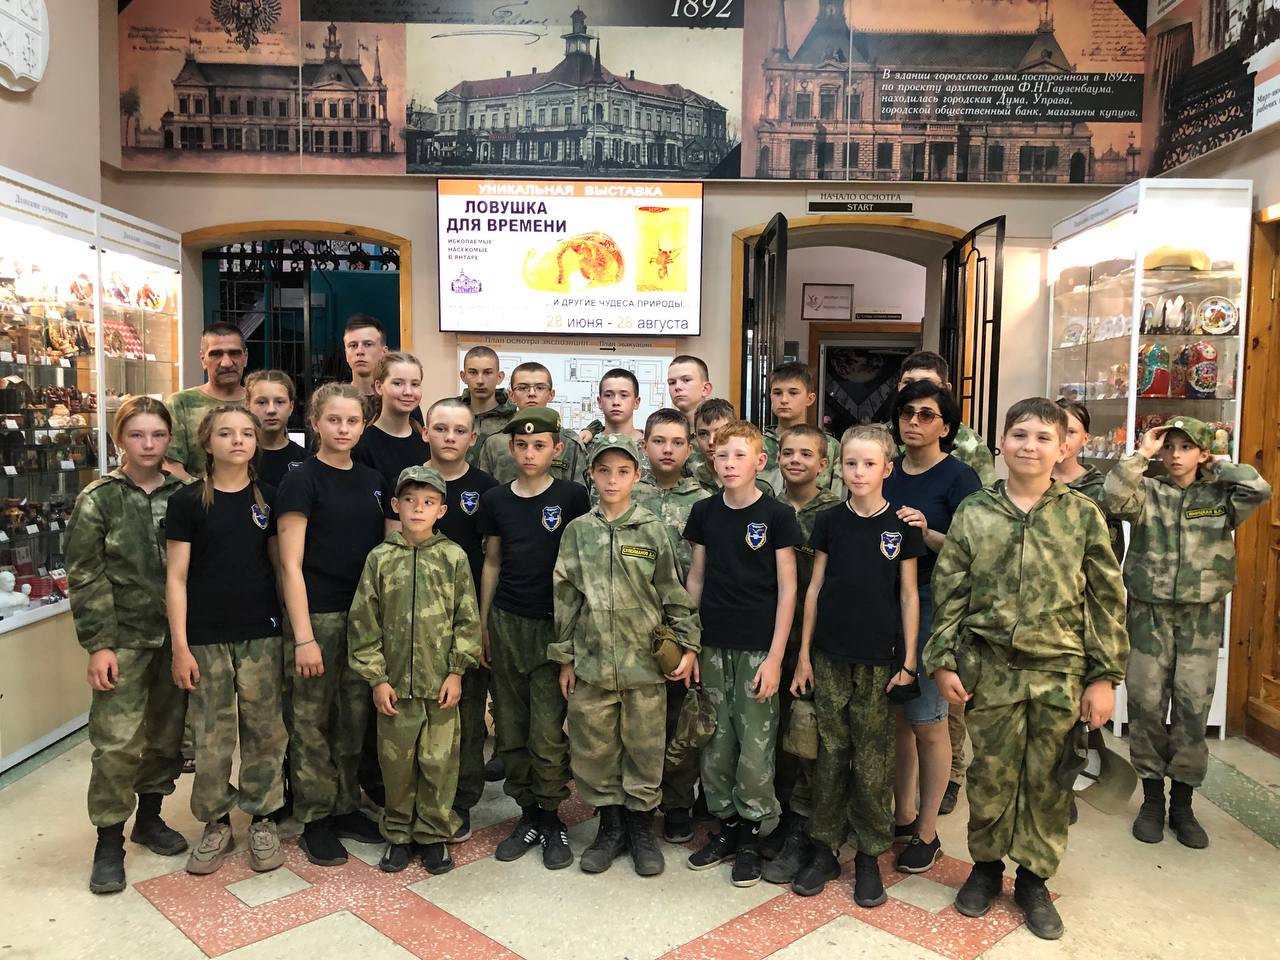 Воспитанники военно-патриотического клуба посетили музей по "Пушкинской карте"